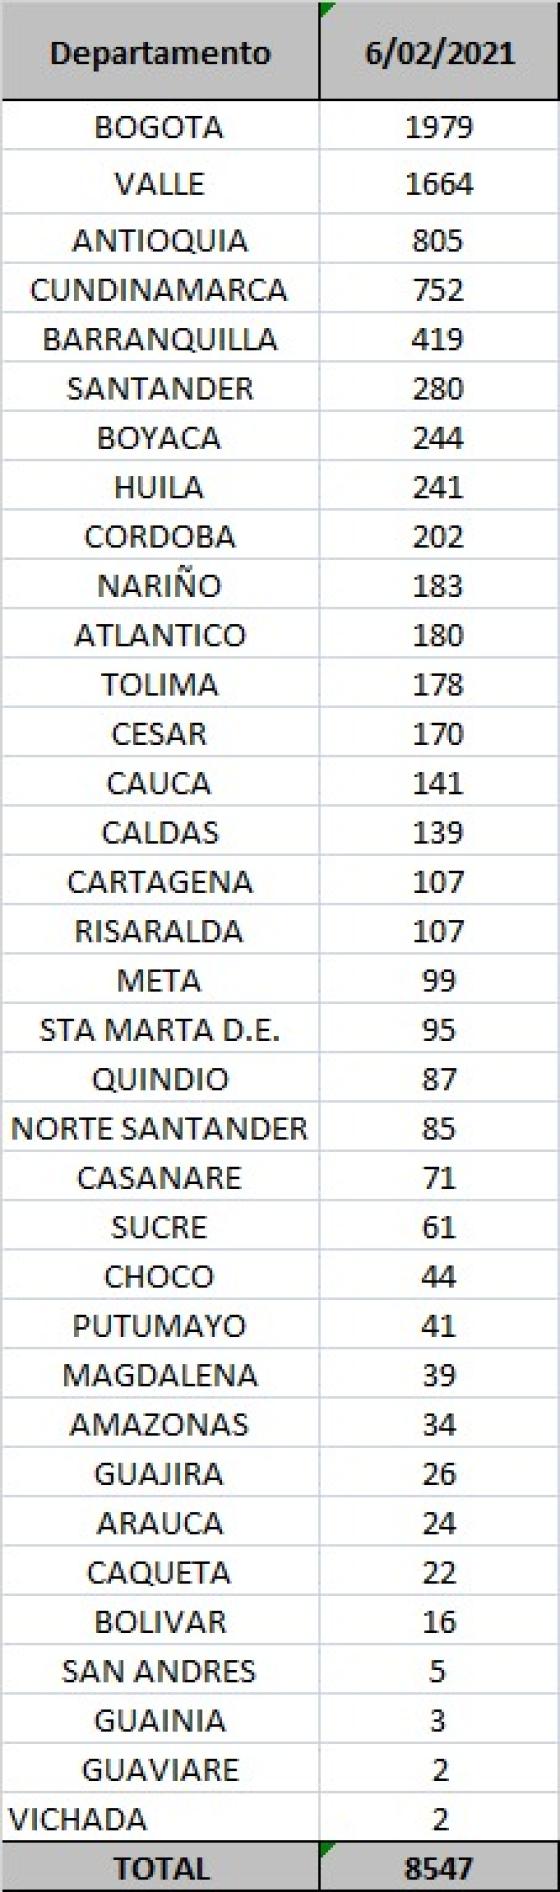 Casos de coronavirus en Colombia por departamento 6 de febrero 2021